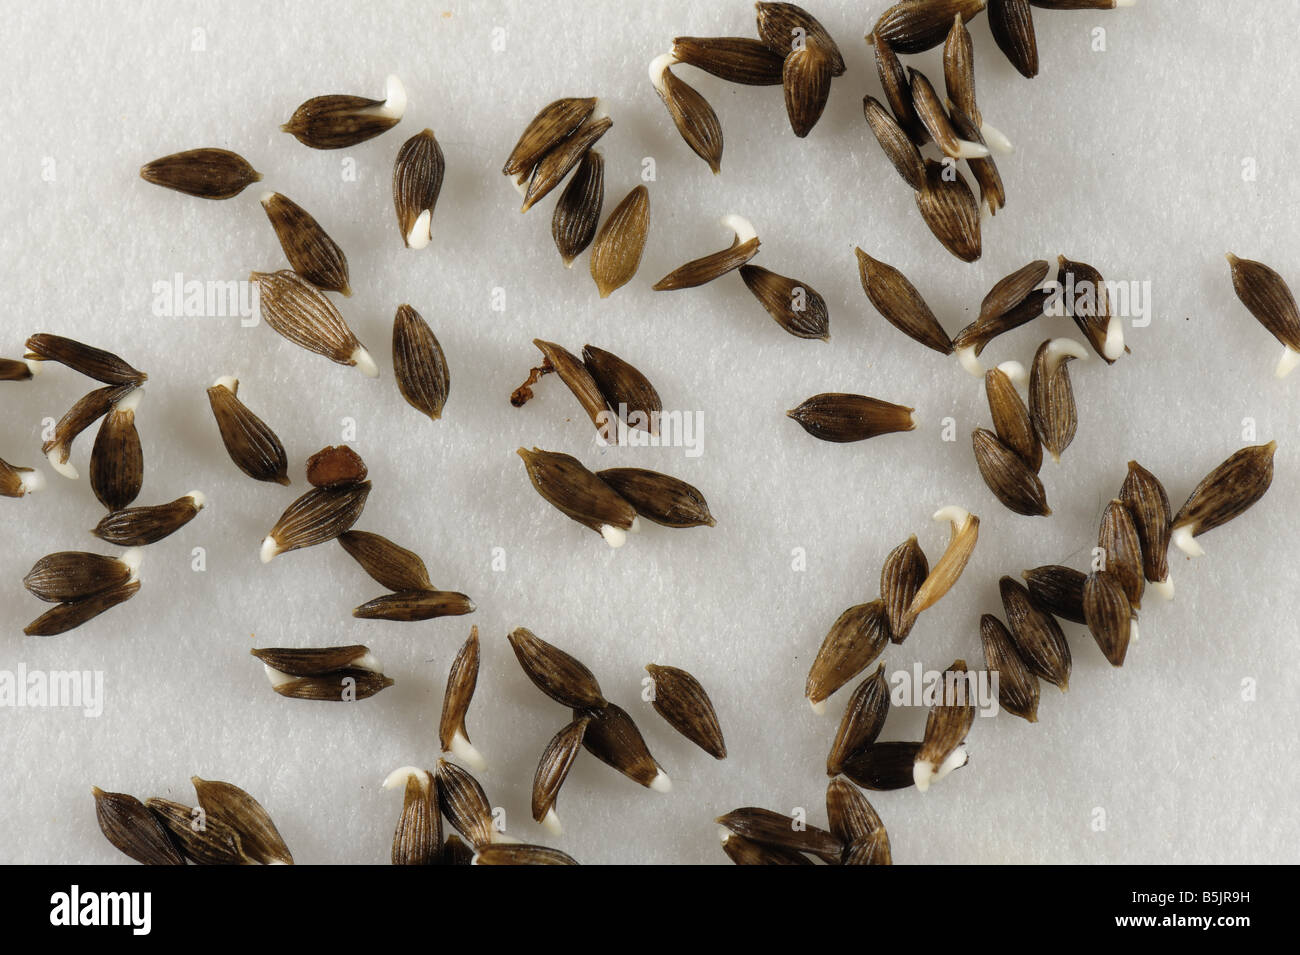 I semi di lattuga su una carta da filtro bagnata inizio a germinare Foto Stock